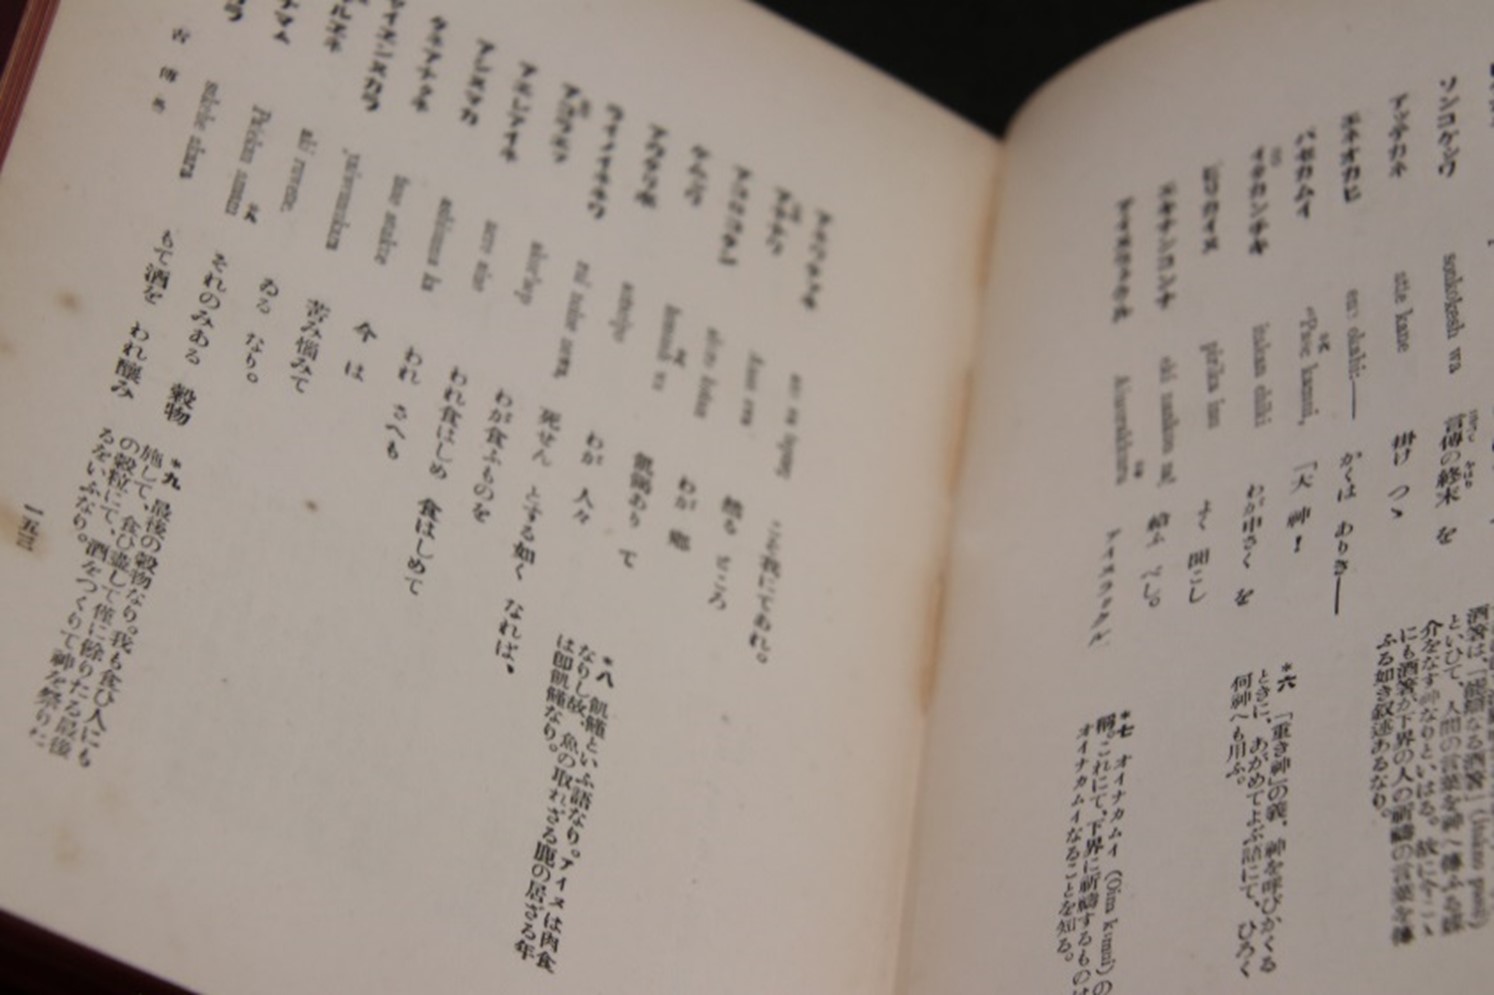 「日本語の歴史」展で展示されている『アイヌ聖典』